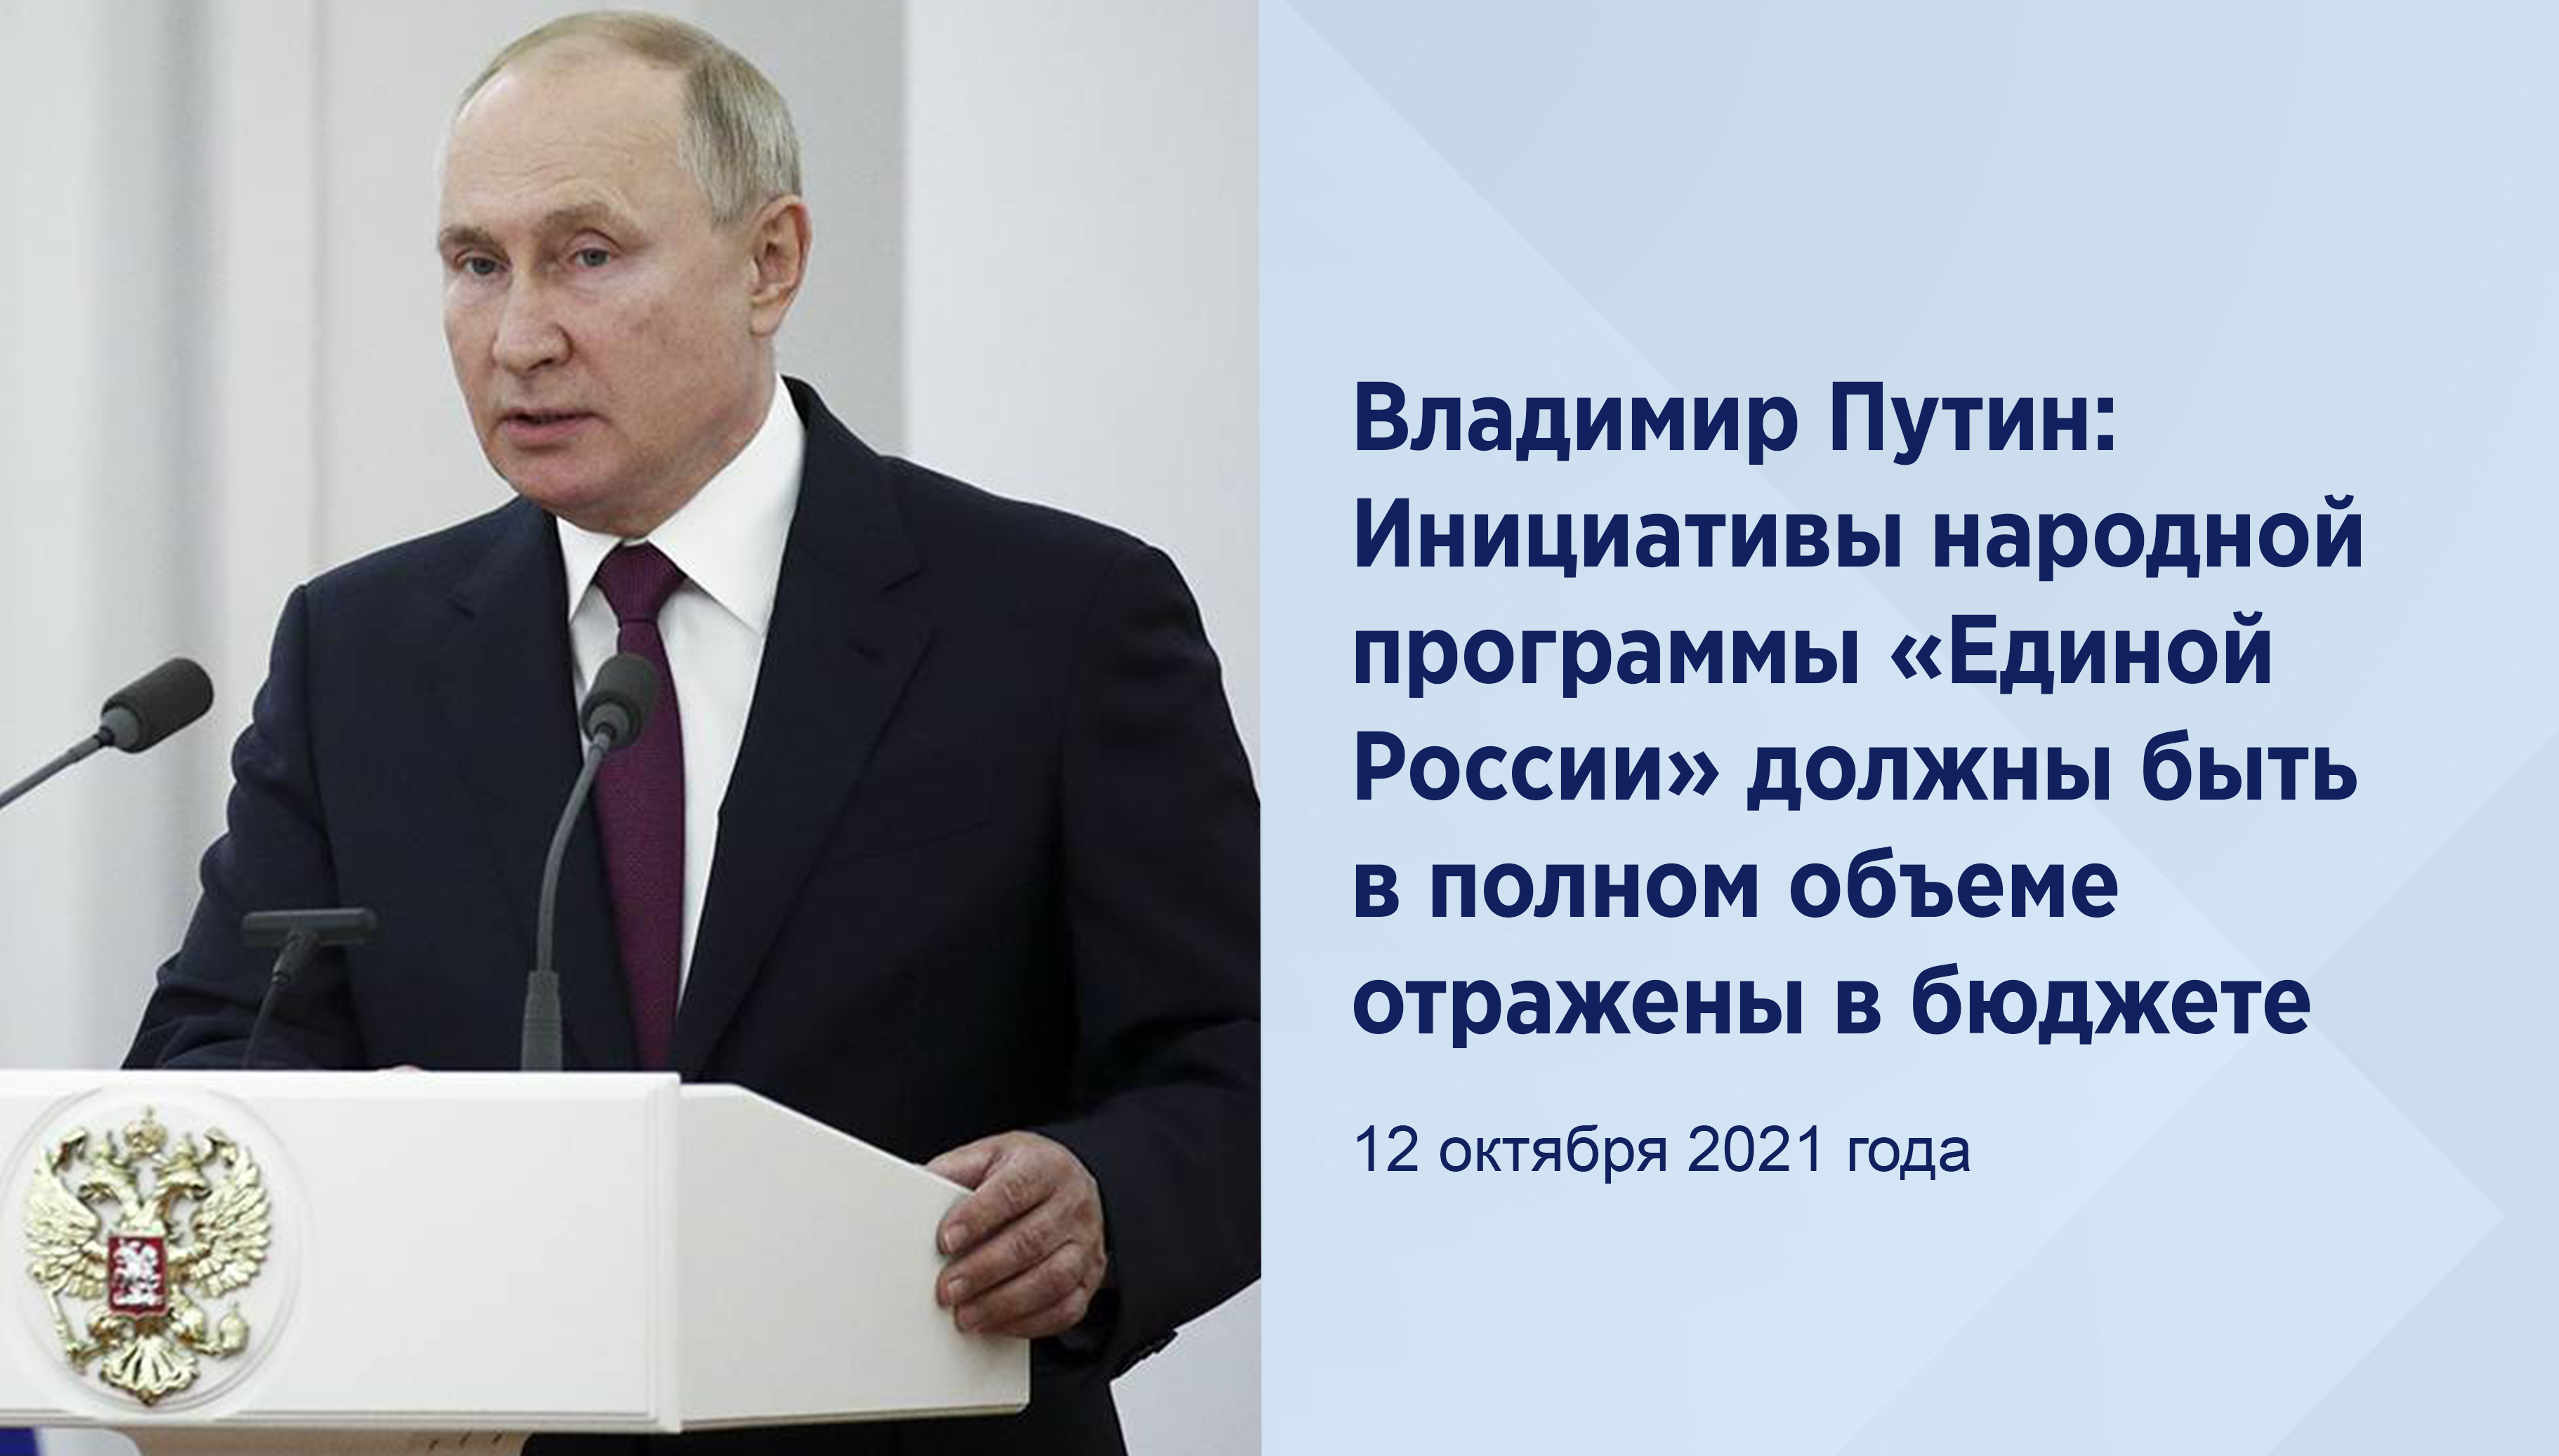 Владимир Путин: Инициативынародной программы «ЕдинойРоссии» должны быть в полном объемеотражены в бюджете